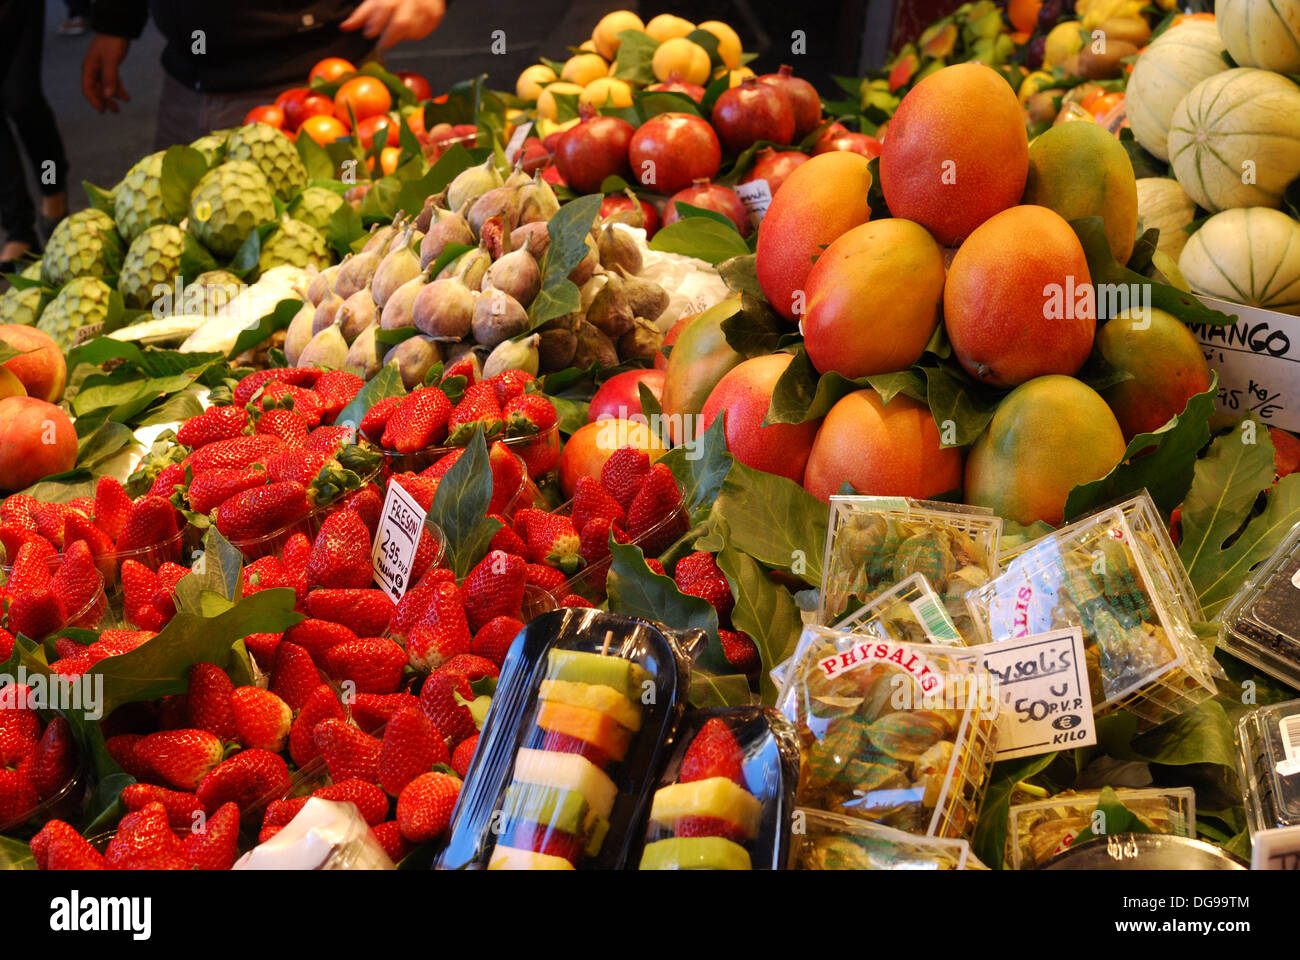 Gemüsehändler und Obst-Shop in Markthalle La Boqueria auf Las Ramblas. Barcelona. Katalonien. Spanien. Nahaufnahme von frischem Obst Stockfoto